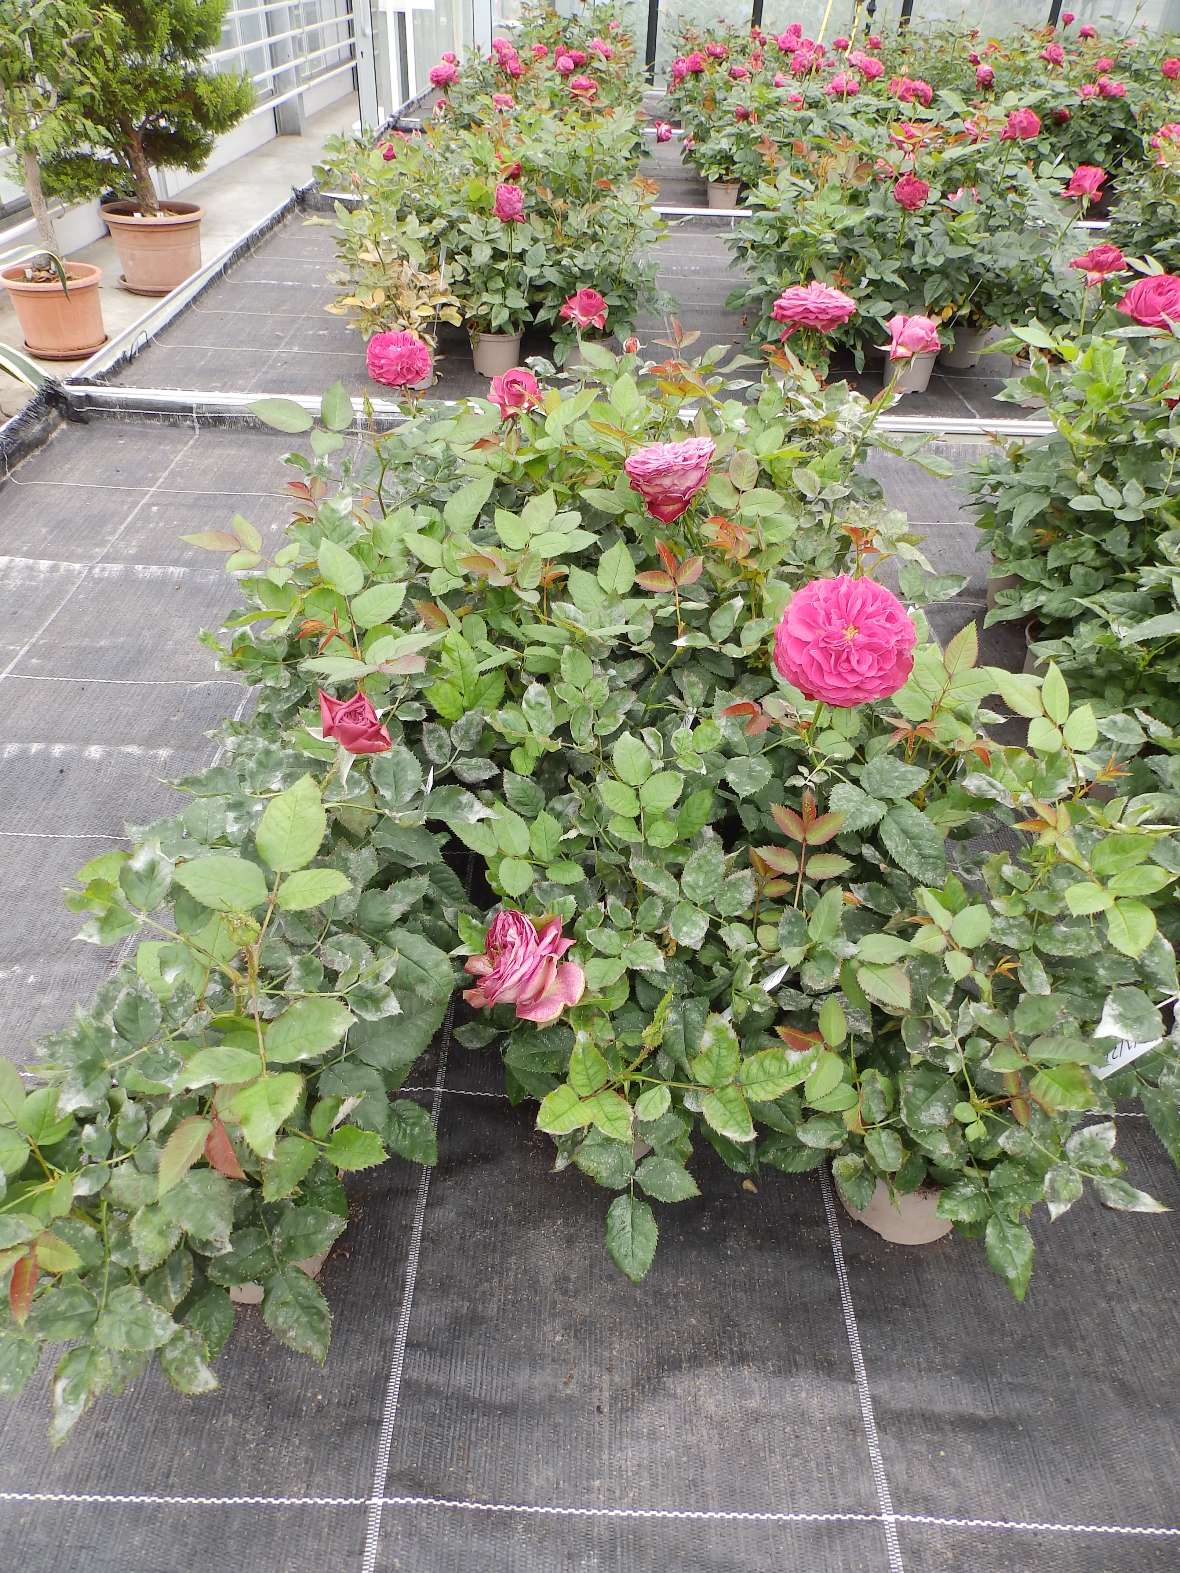 Am Versuchsende zeigen die Rosen in einzelnen Behandlungsvarianten starken Befall mit Echtem Mehltau. Die Randpflanzen wurden für die Durchführung der Endbonturen bereits entfernt.